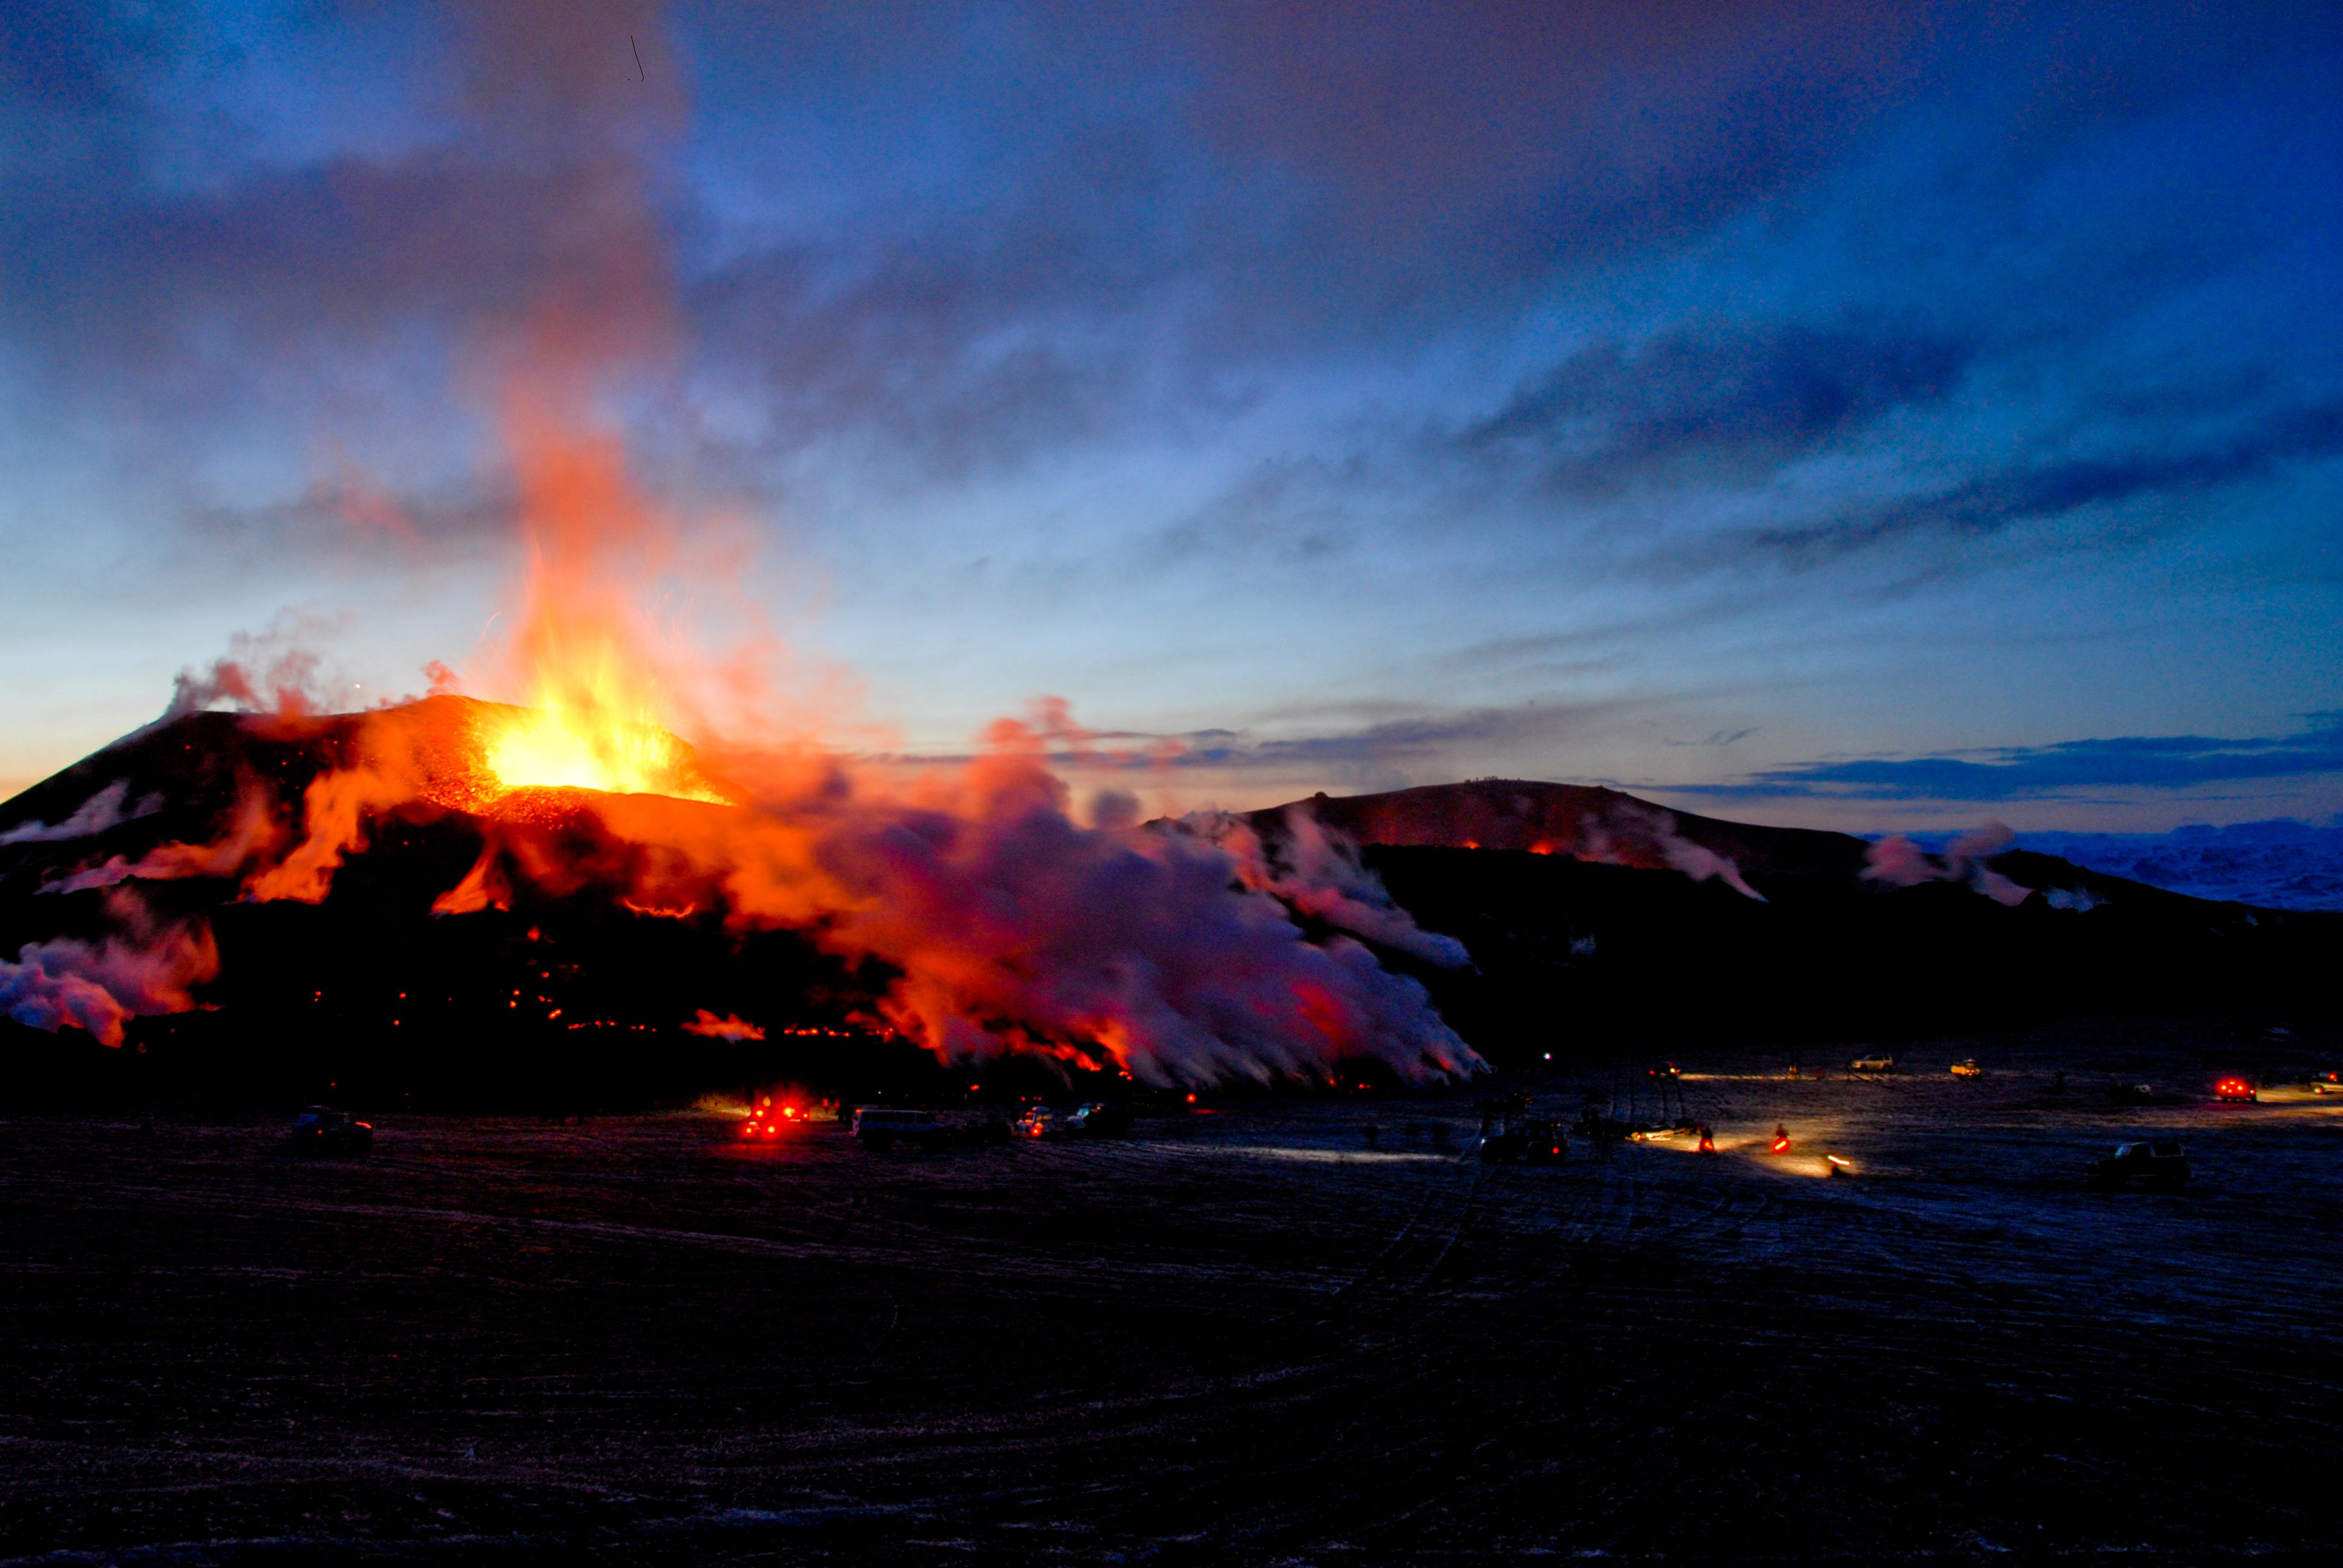 Почему в исландии большое количество вулканов. Вулкан Эйяфьятлайокудль извержение 2010. Эйяфьядлайёкюдль вулкан в Исландии. Извержение вулкана в Исландии 2010. Извержение вулкана в Исландии Эйяфьятлайокудль.